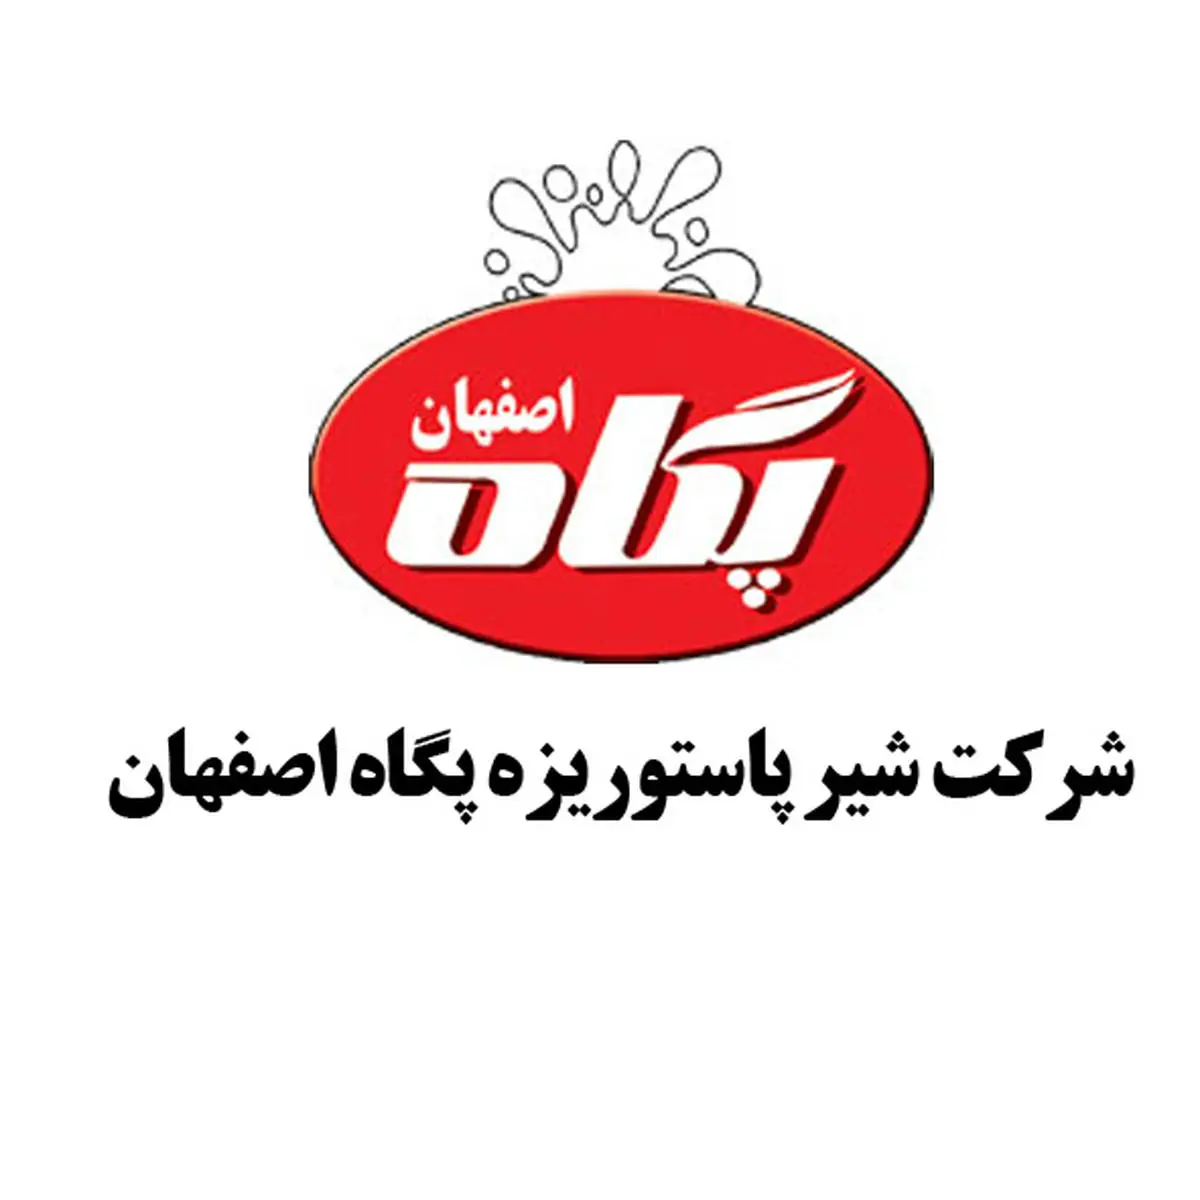 نگاهی بر عملکرد یک ساله شیر پاستوریزه پگاه اصفهان